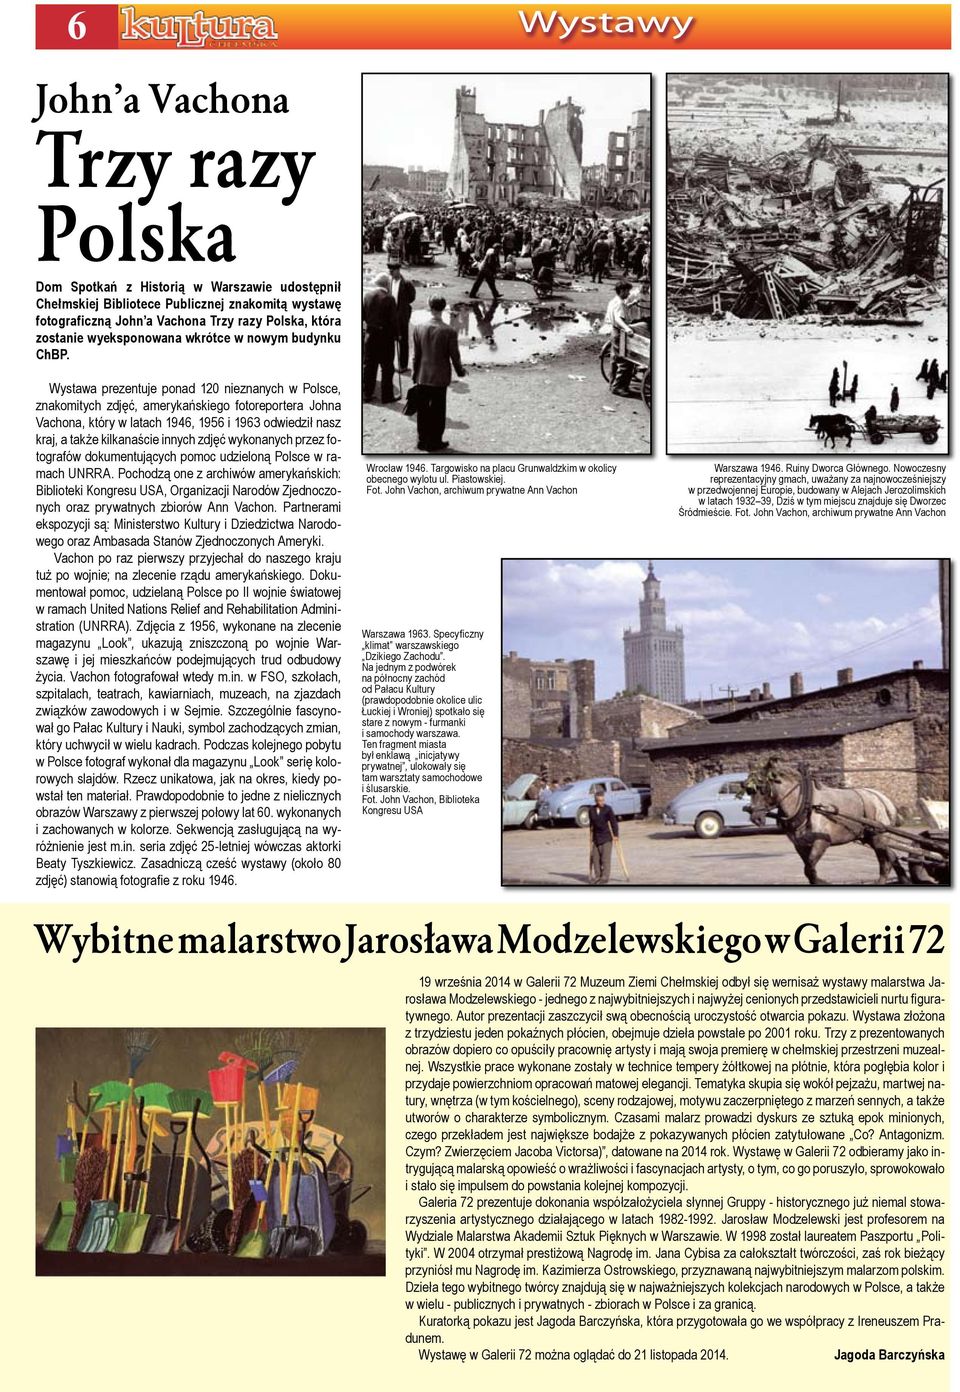 Wystawa prezentuje ponad 120 nieznanych w Polsce, znakomitych zdjęć, amerykańskiego fotoreportera Johna Vachona, który w latach 1946, 1956 i 1963 odwiedził nasz kraj, a także kilkanaście innych zdjęć